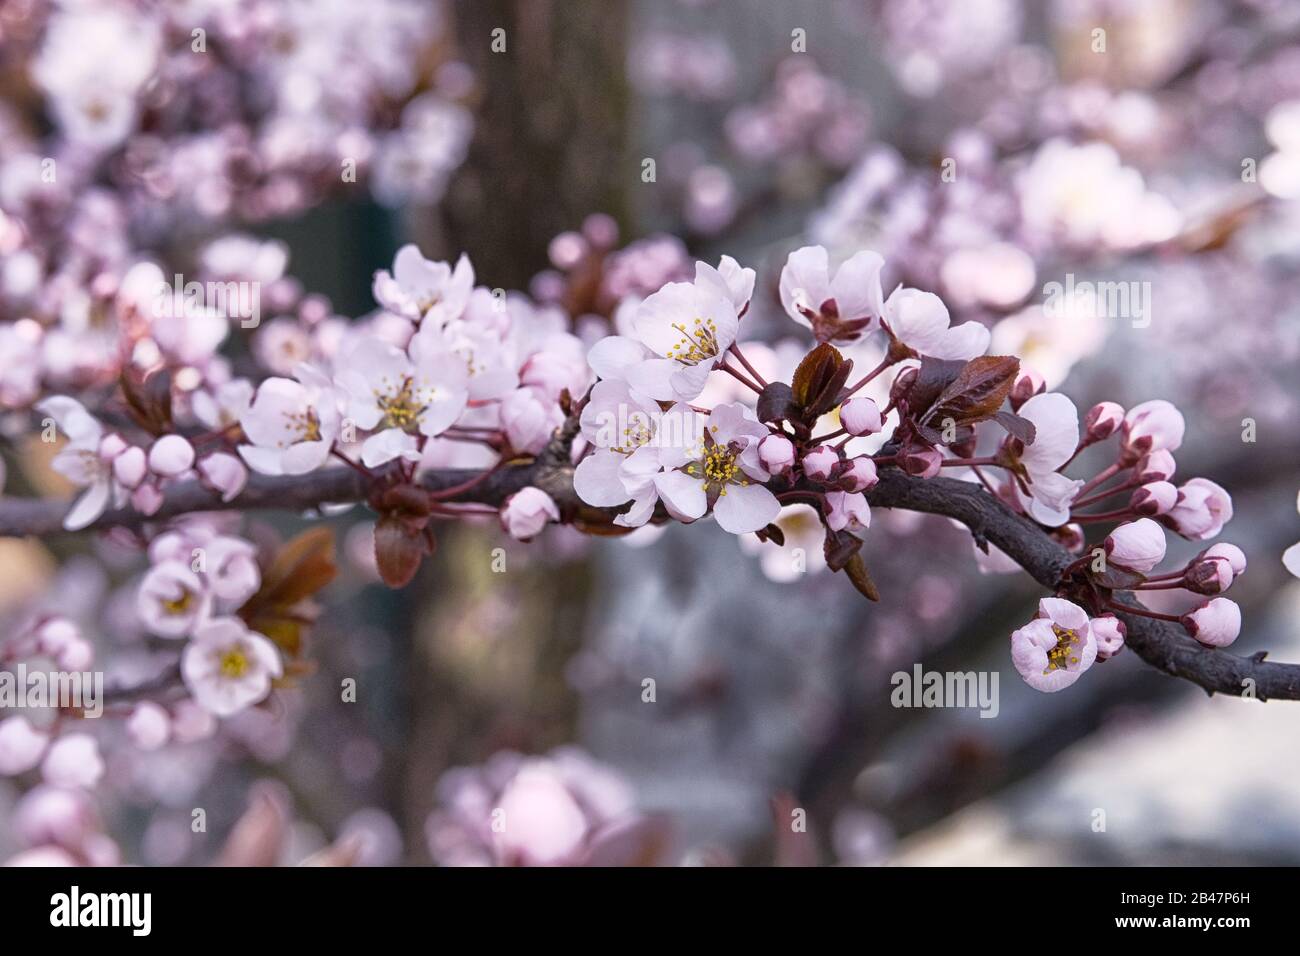 Aprikosenblüten mit leuchtend weißen Kronblättern. Grußkarte für den Tag der Frauen. Frühling verschwommener Hintergrund in Japan, violette Farbe. Stockfoto